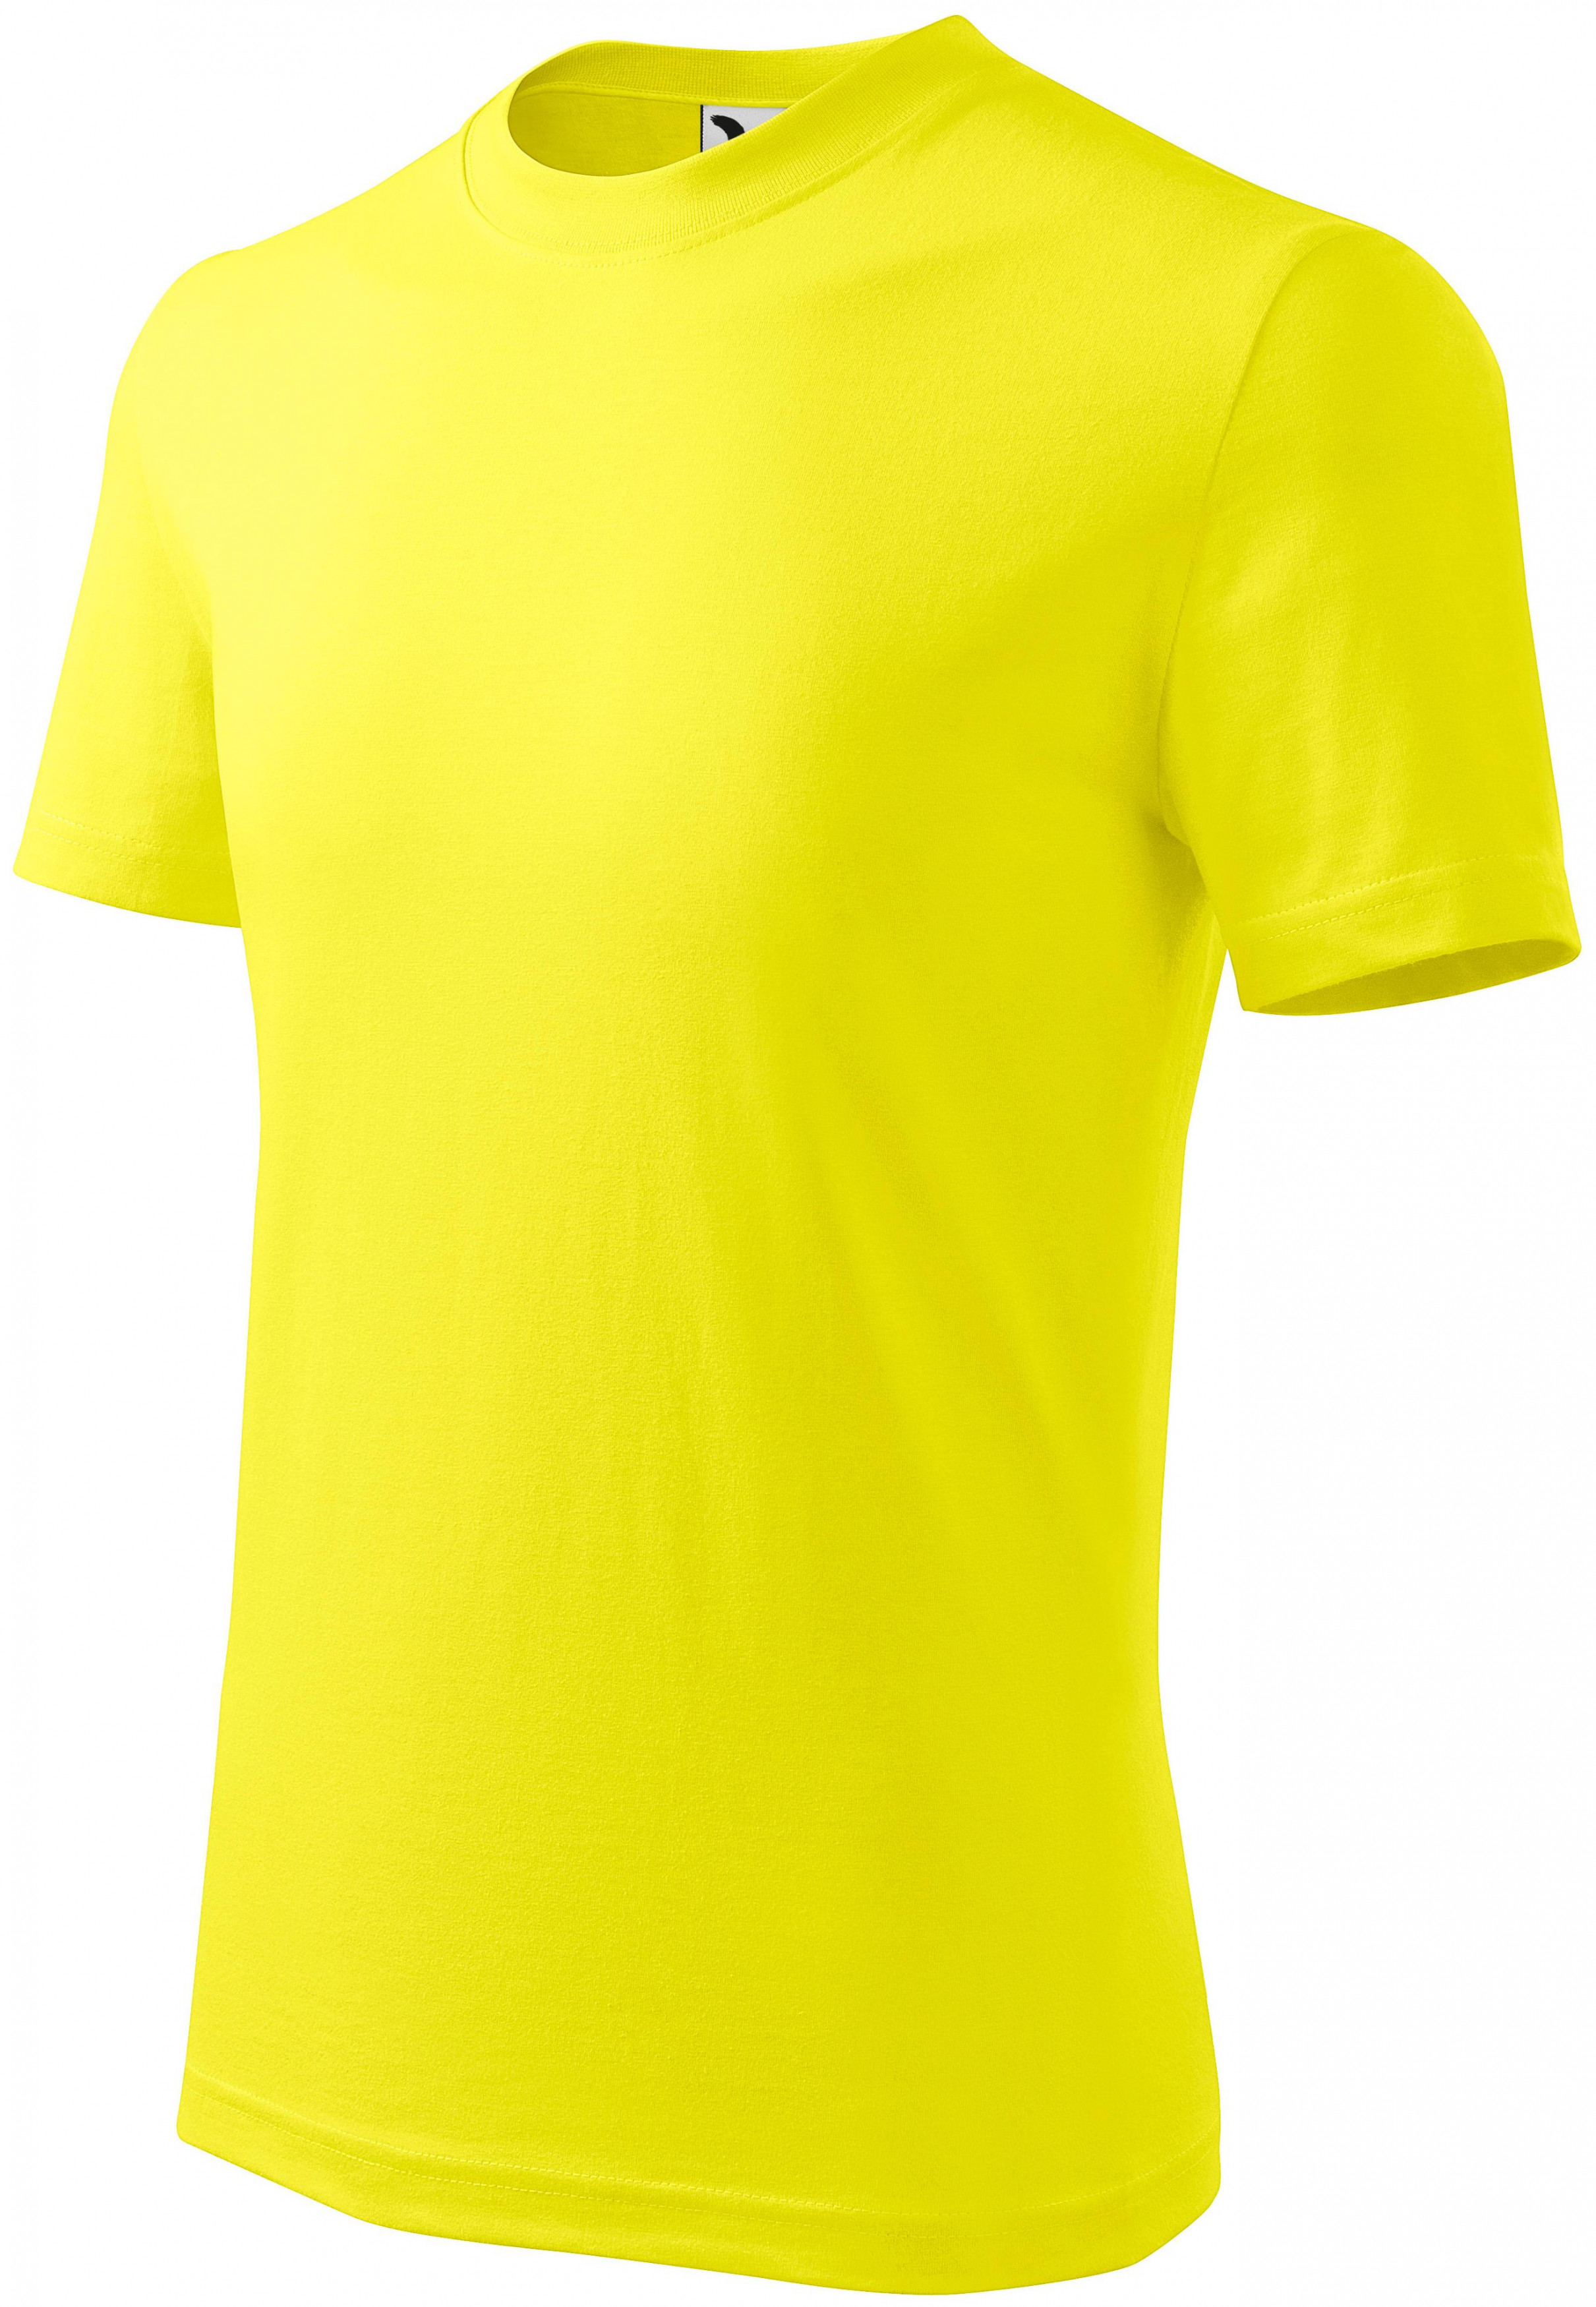 Detské tričko jednoduché, citrónová, 134cm / 8rokov